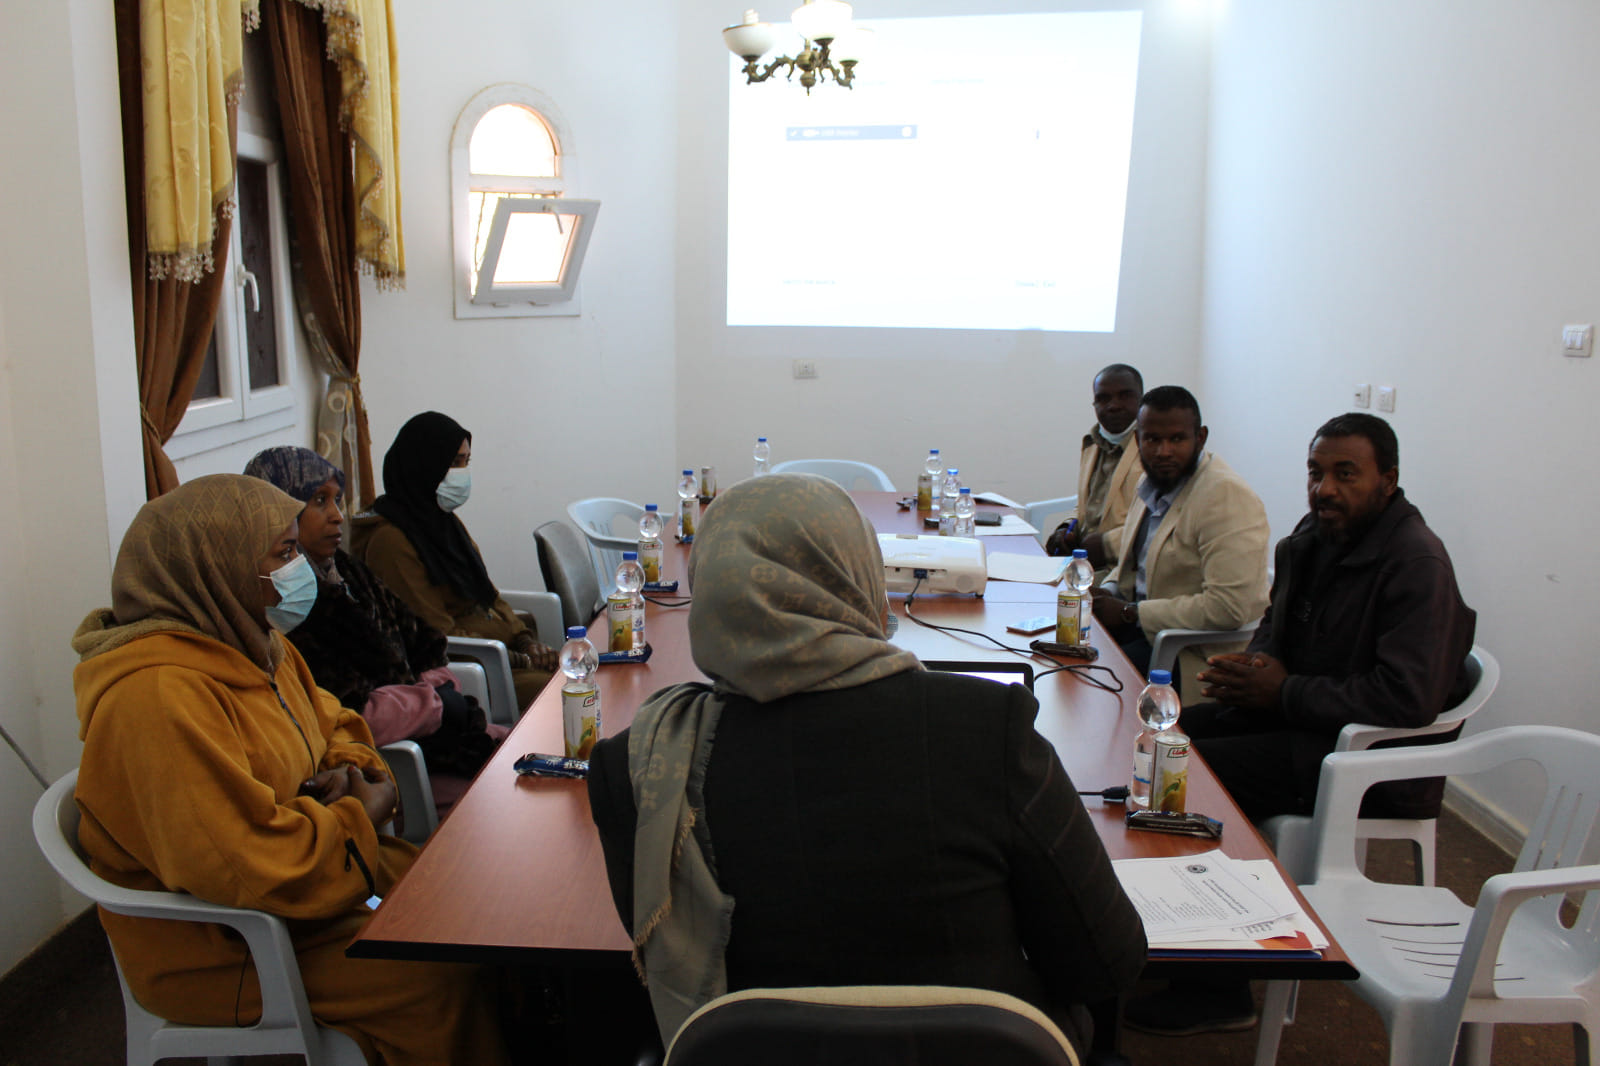  إدارة التوثيق والمعلومات بالمركز الليبى لابحاث الصحراء و تنمية المجتماعات الصحراوية  تستعرض محددات الخطة السنوية لهذا العام . 